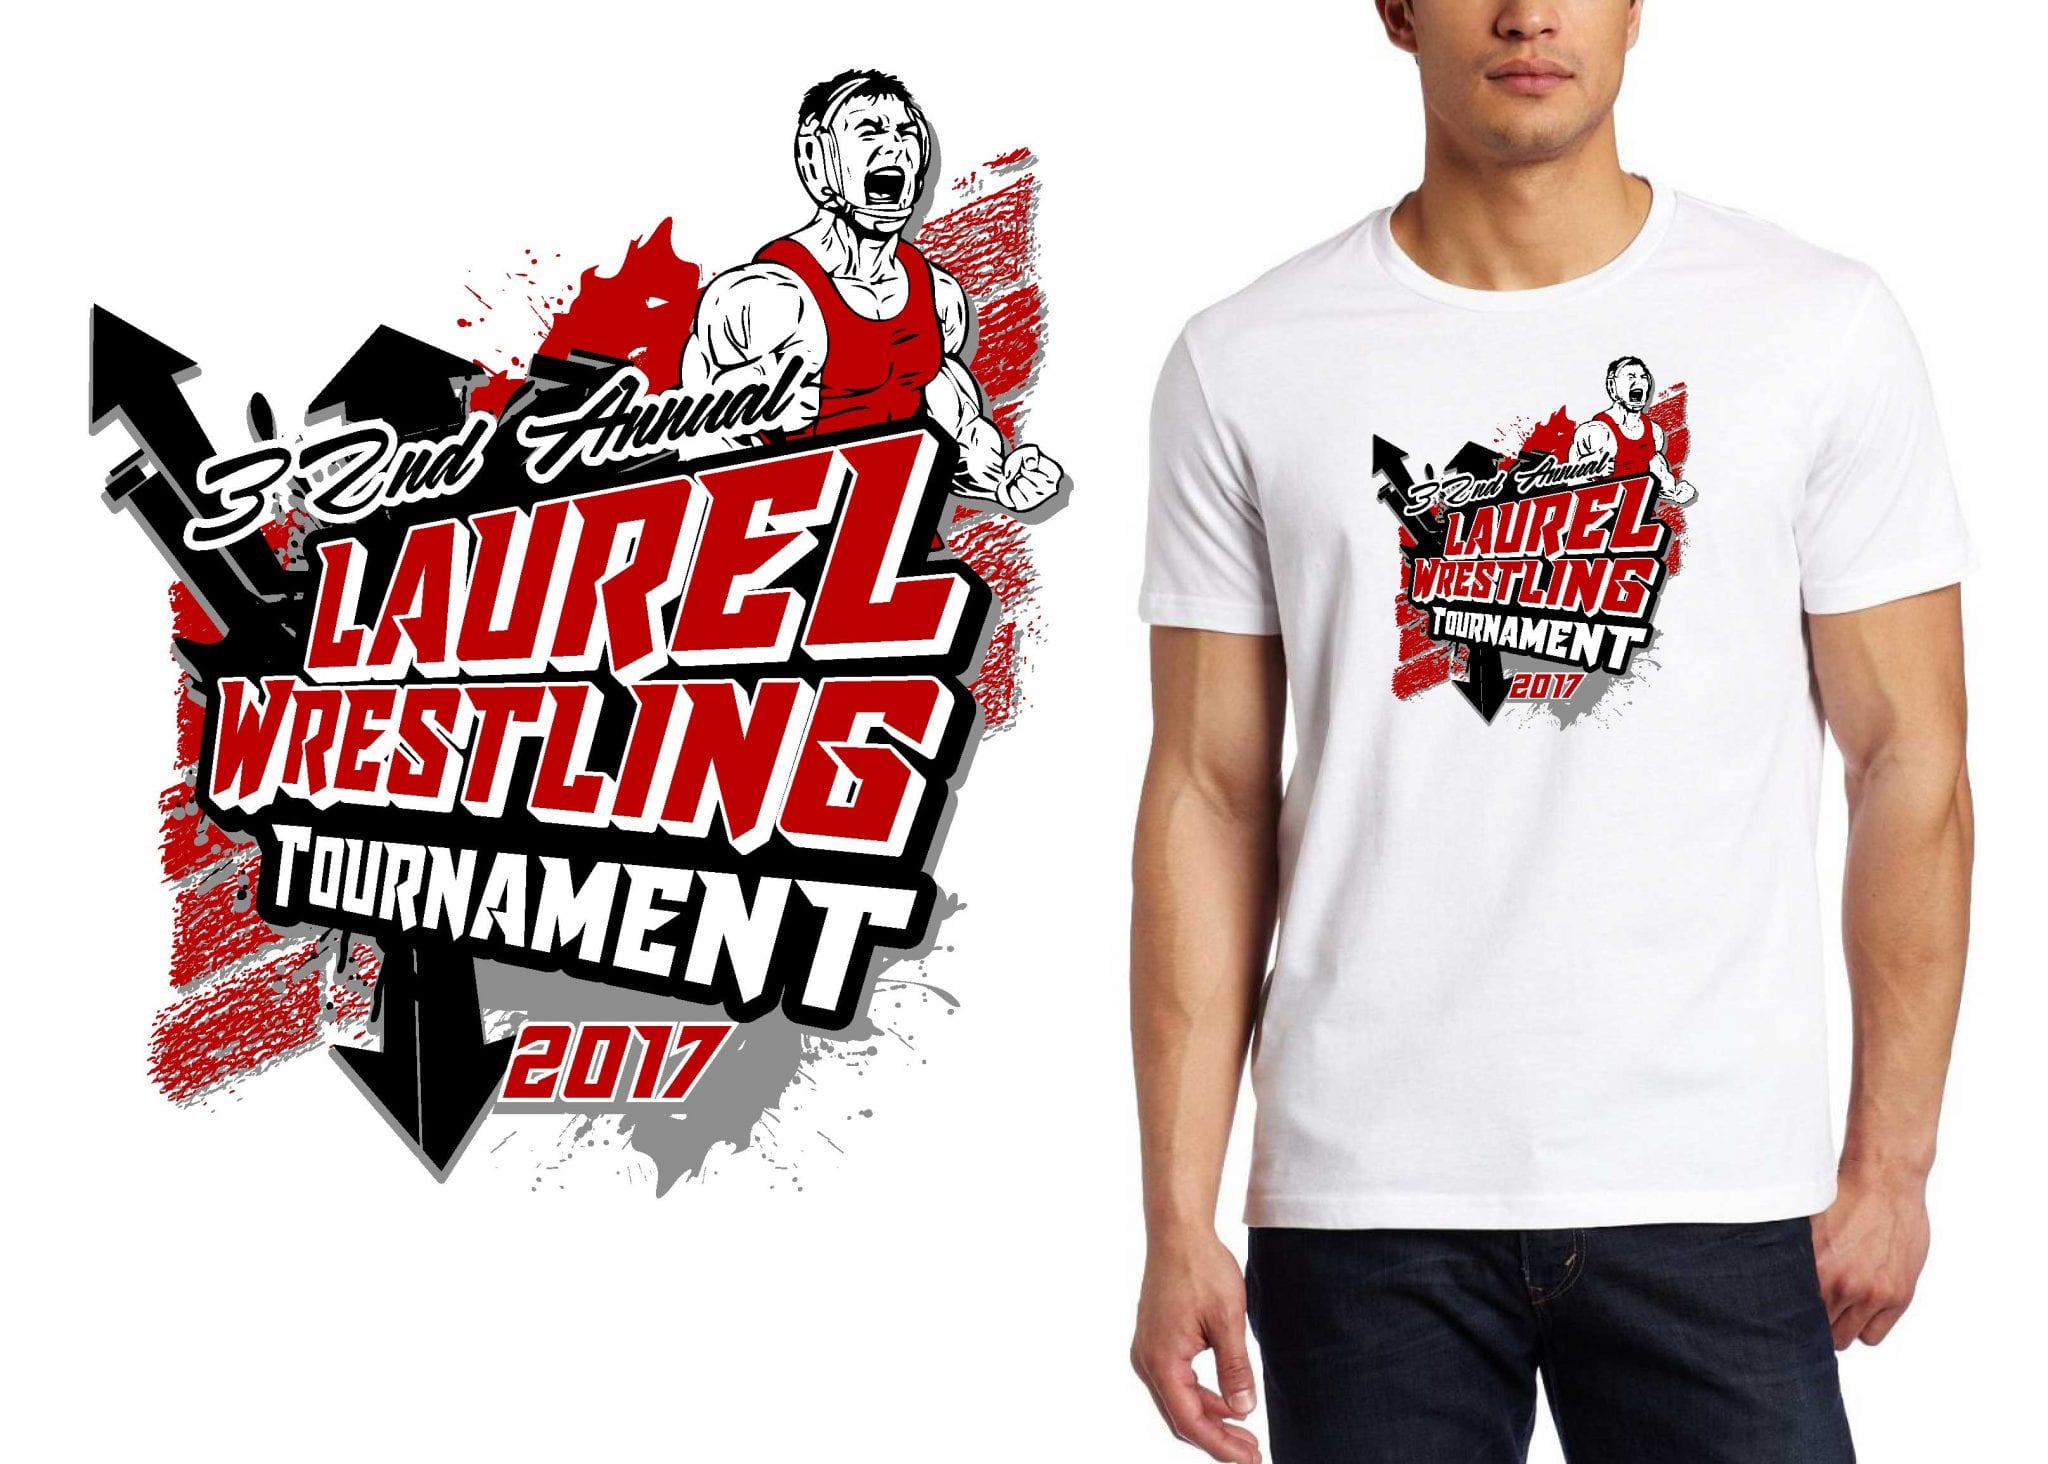 2017 31st Annual Laurel Wrestling Tournament vector logo design for t-shirt UrArtStudio